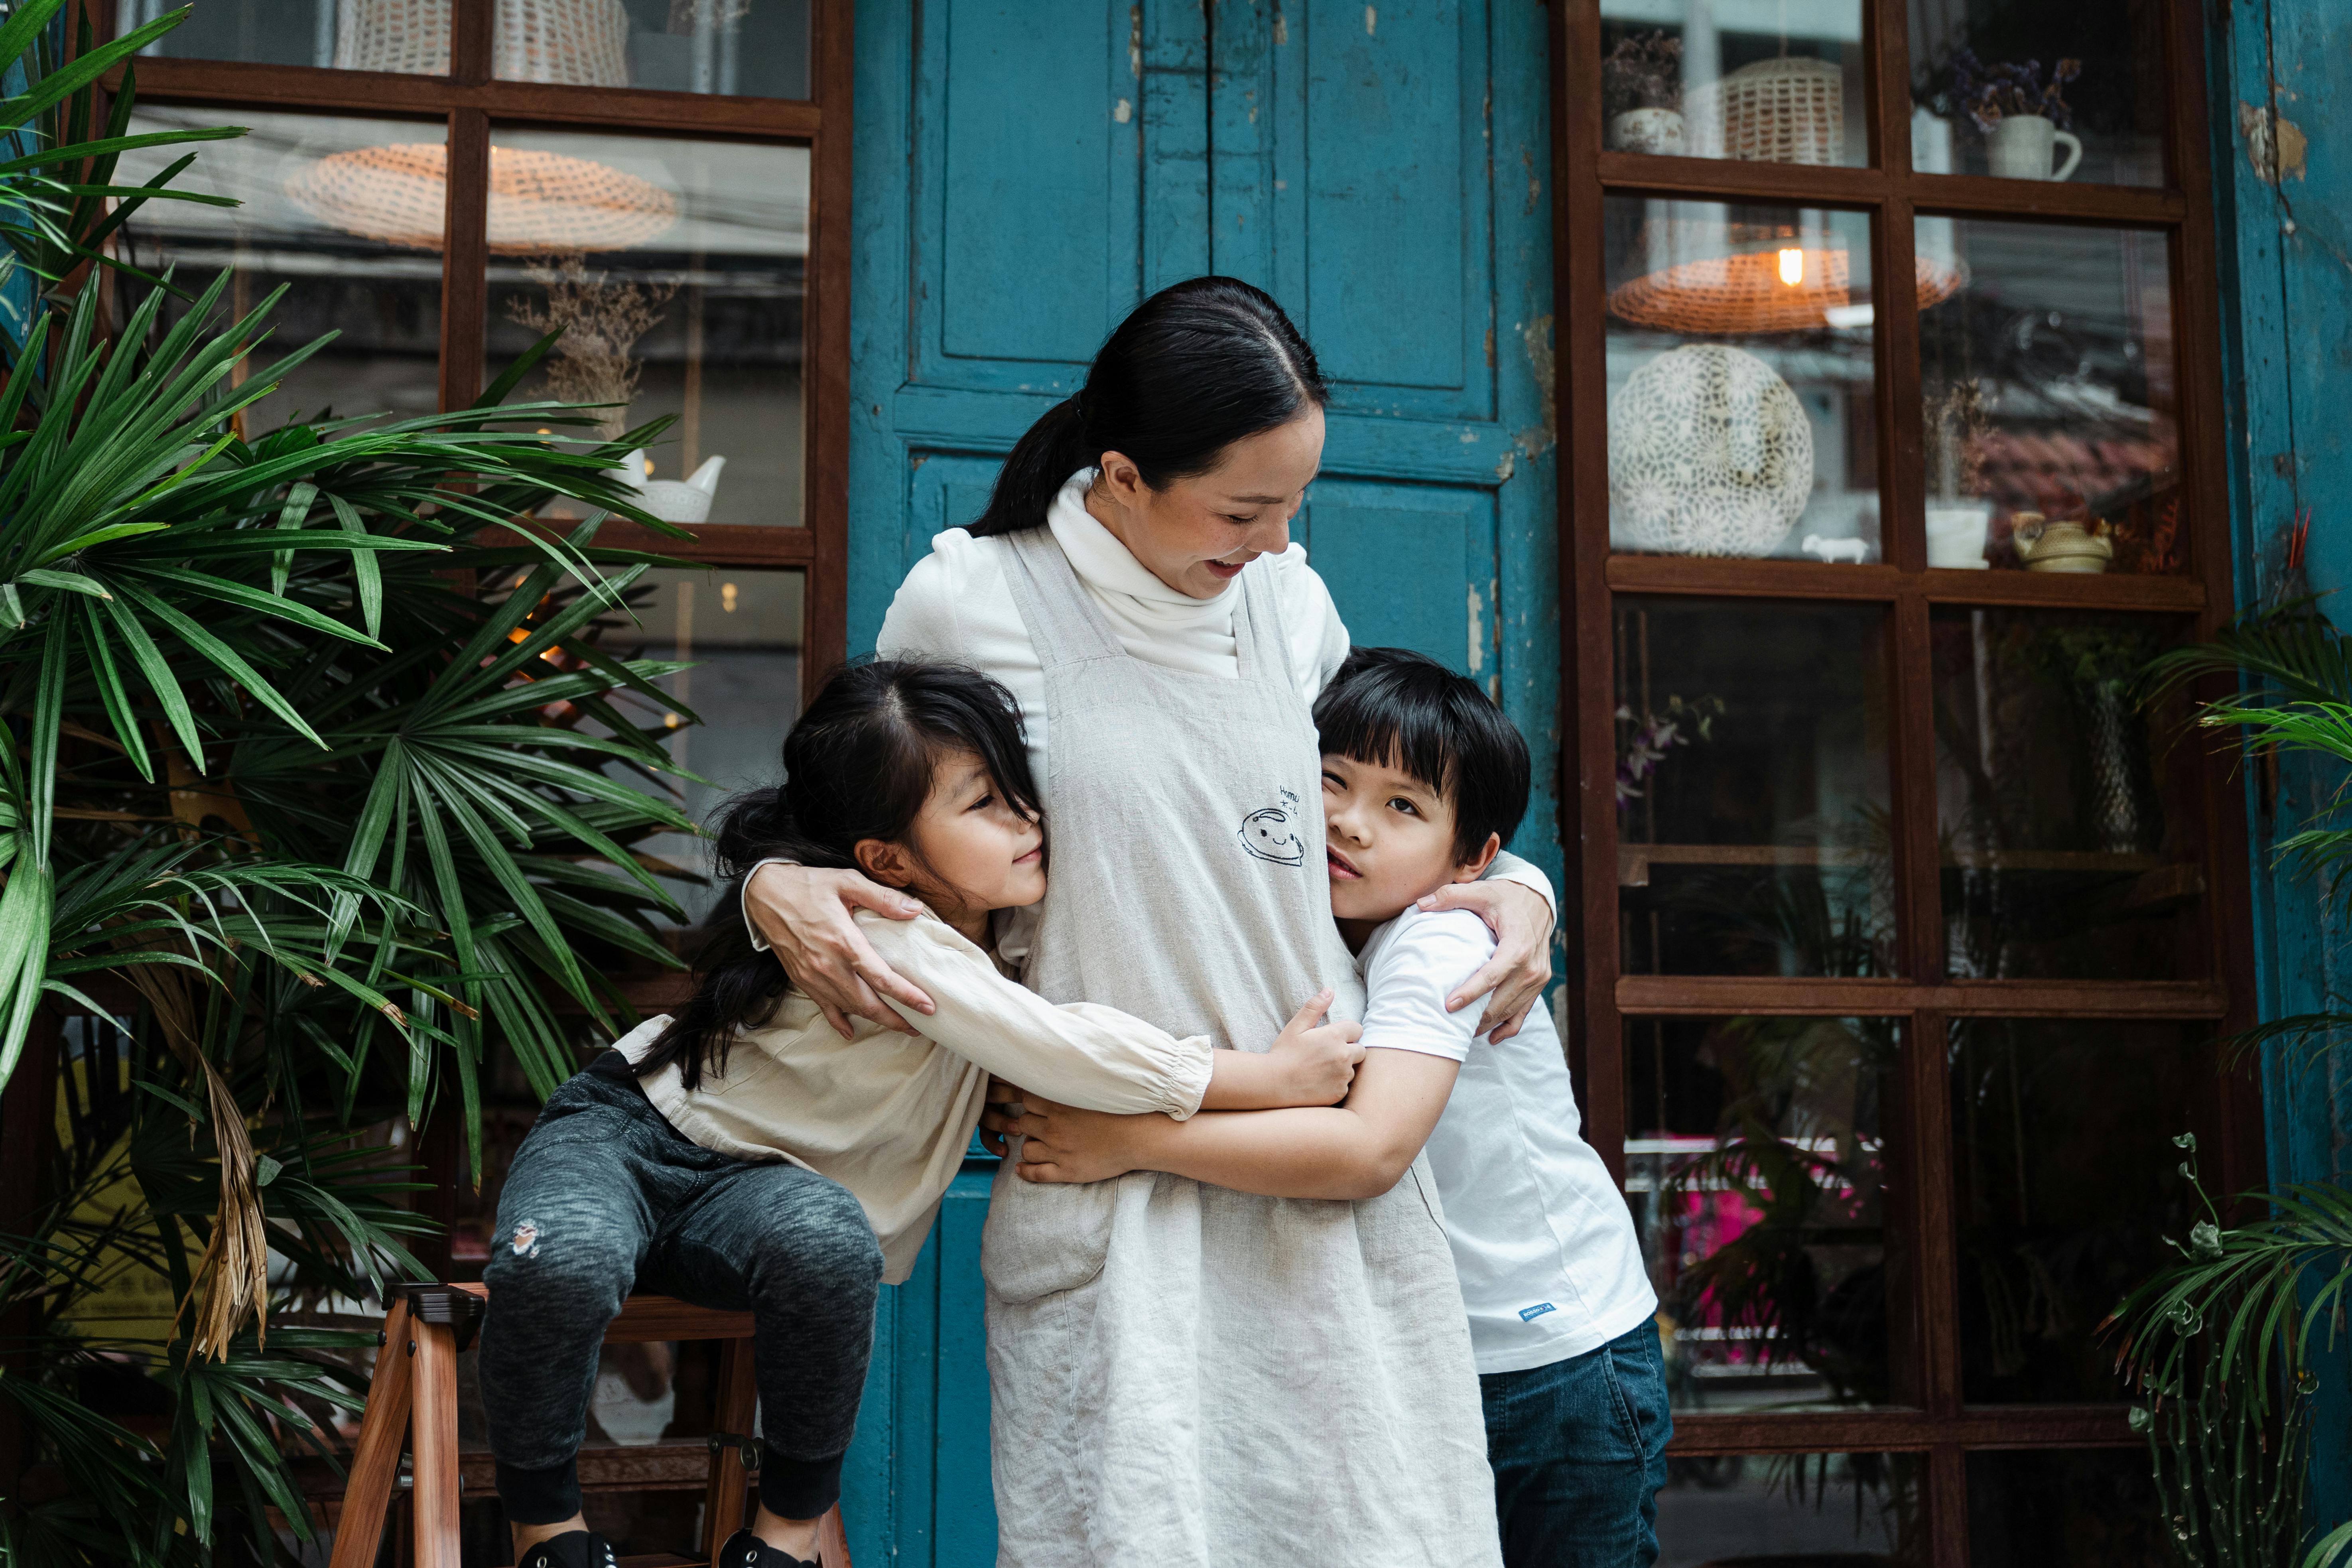 Eine Frau, die zwei kleine Kinder umarmt | Quelle: Pexels